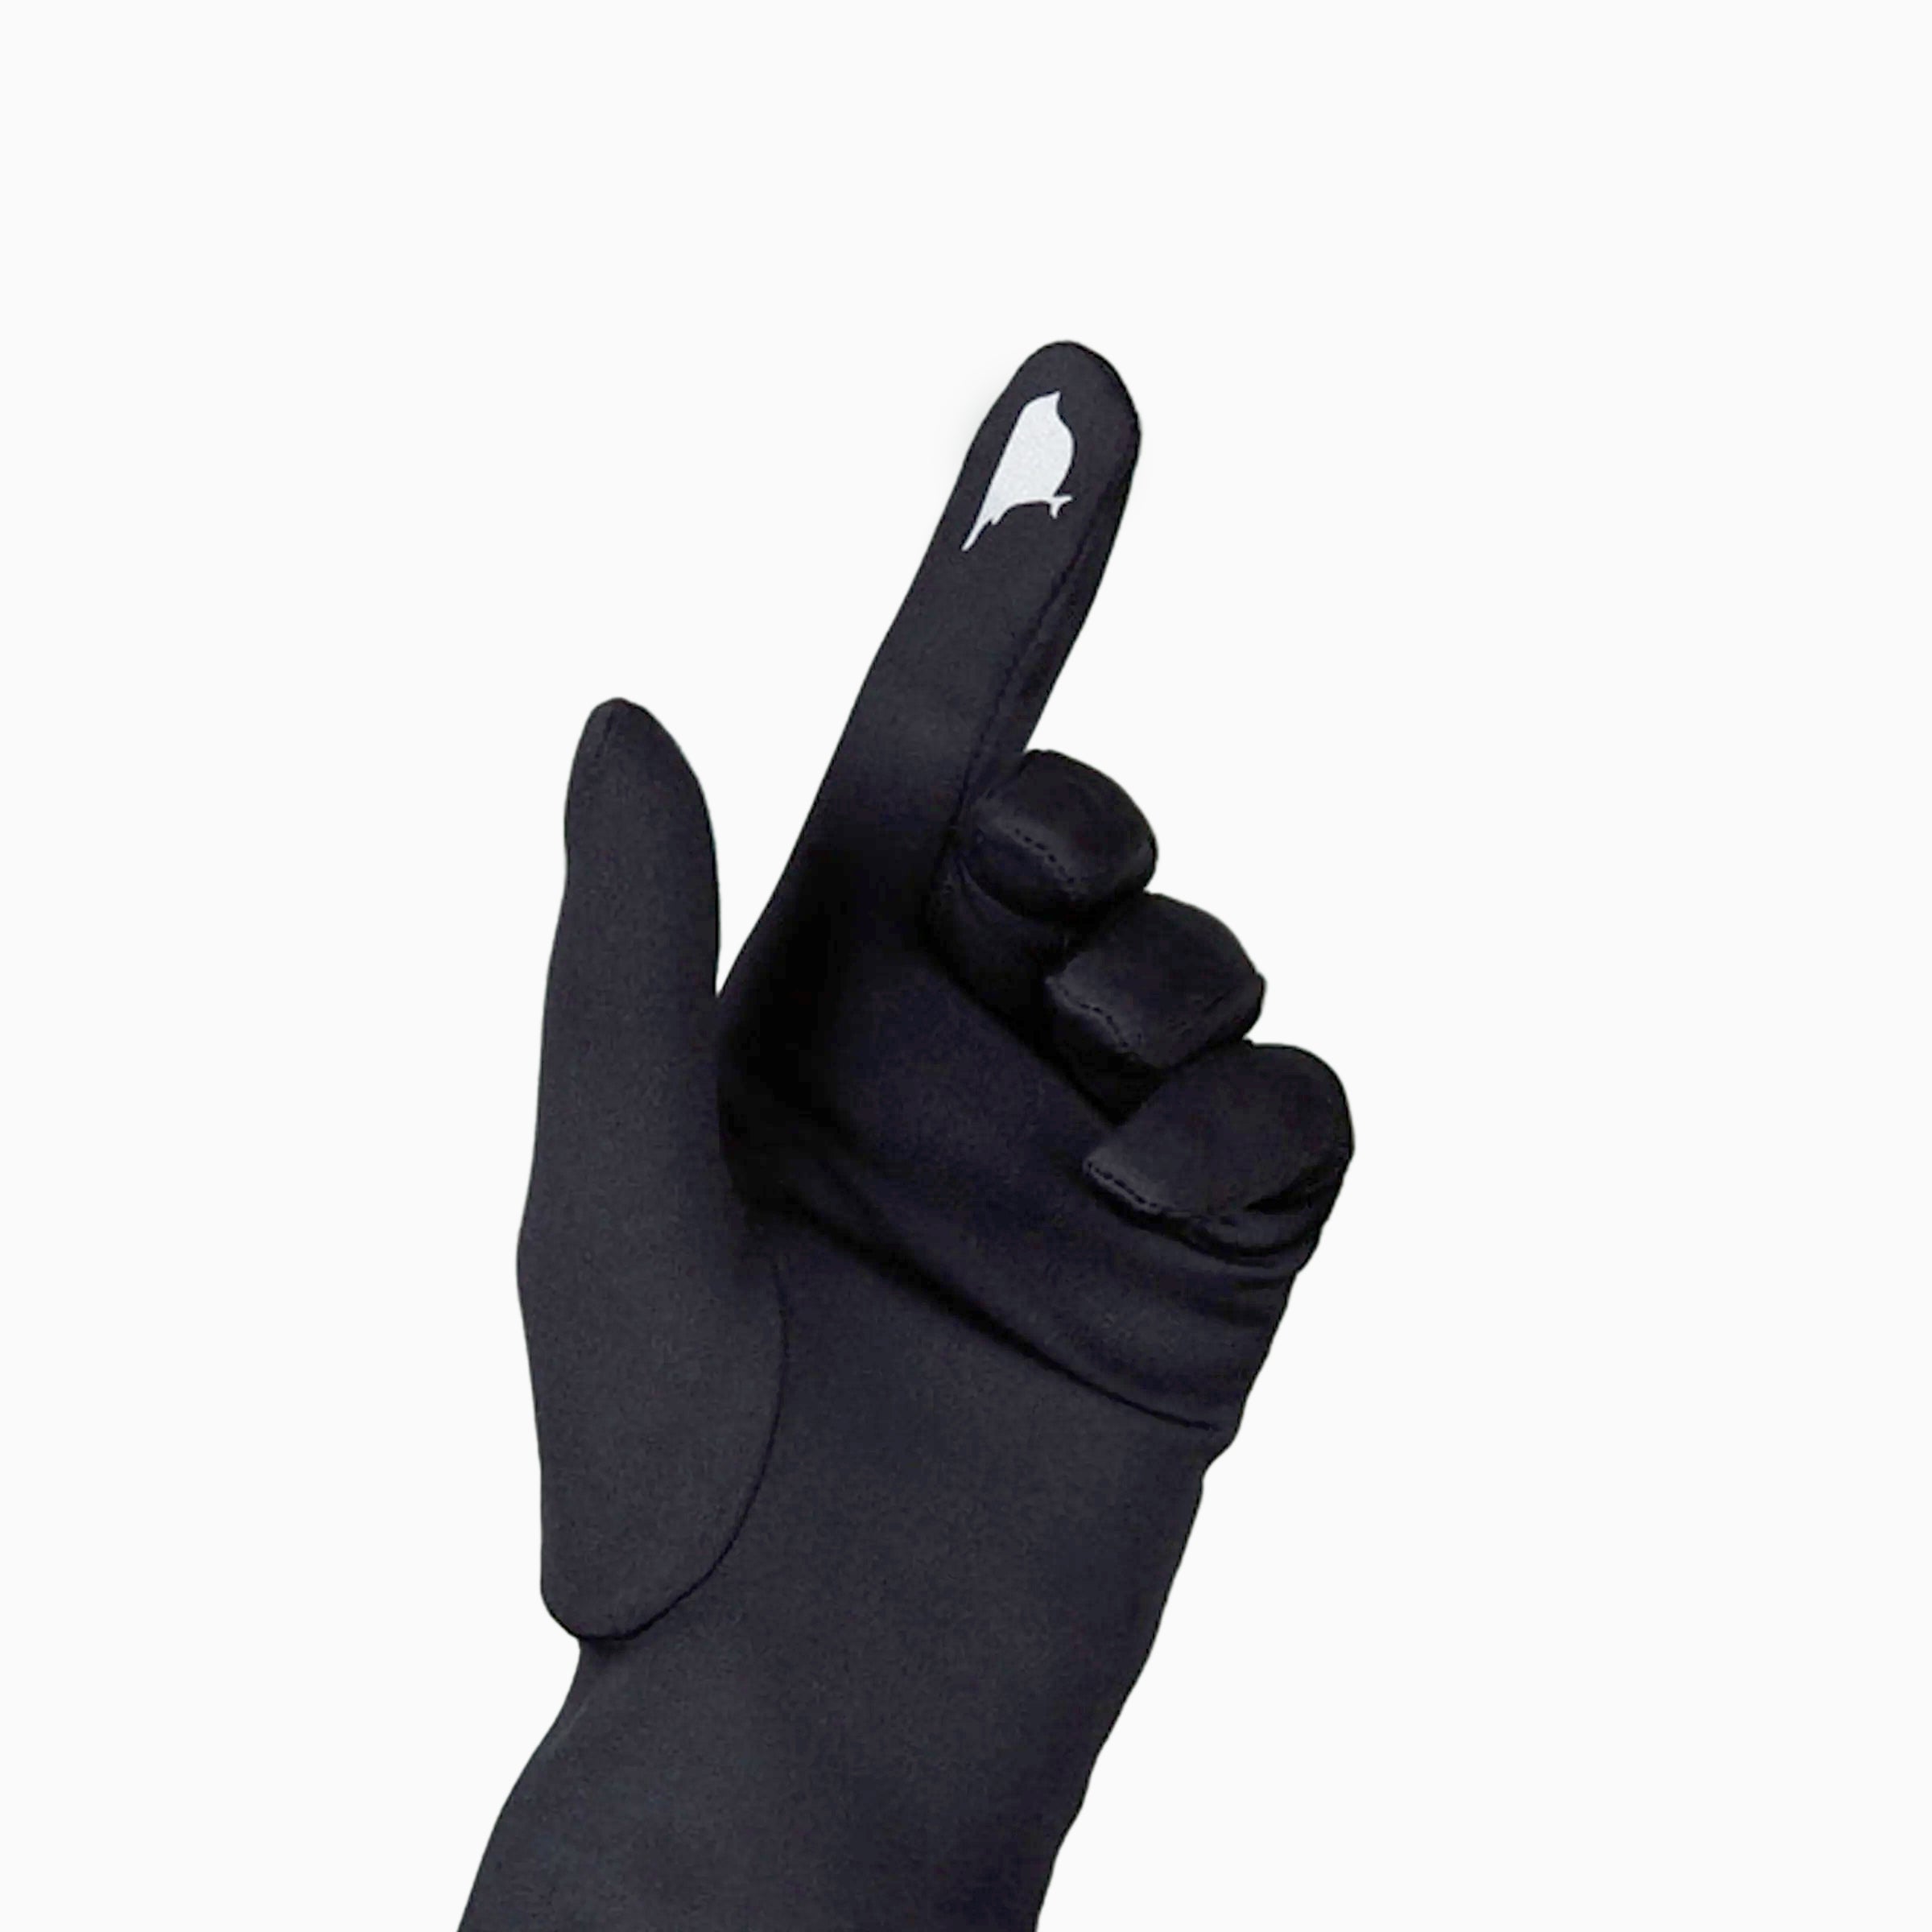 THE JILL technology friendly finger glove.